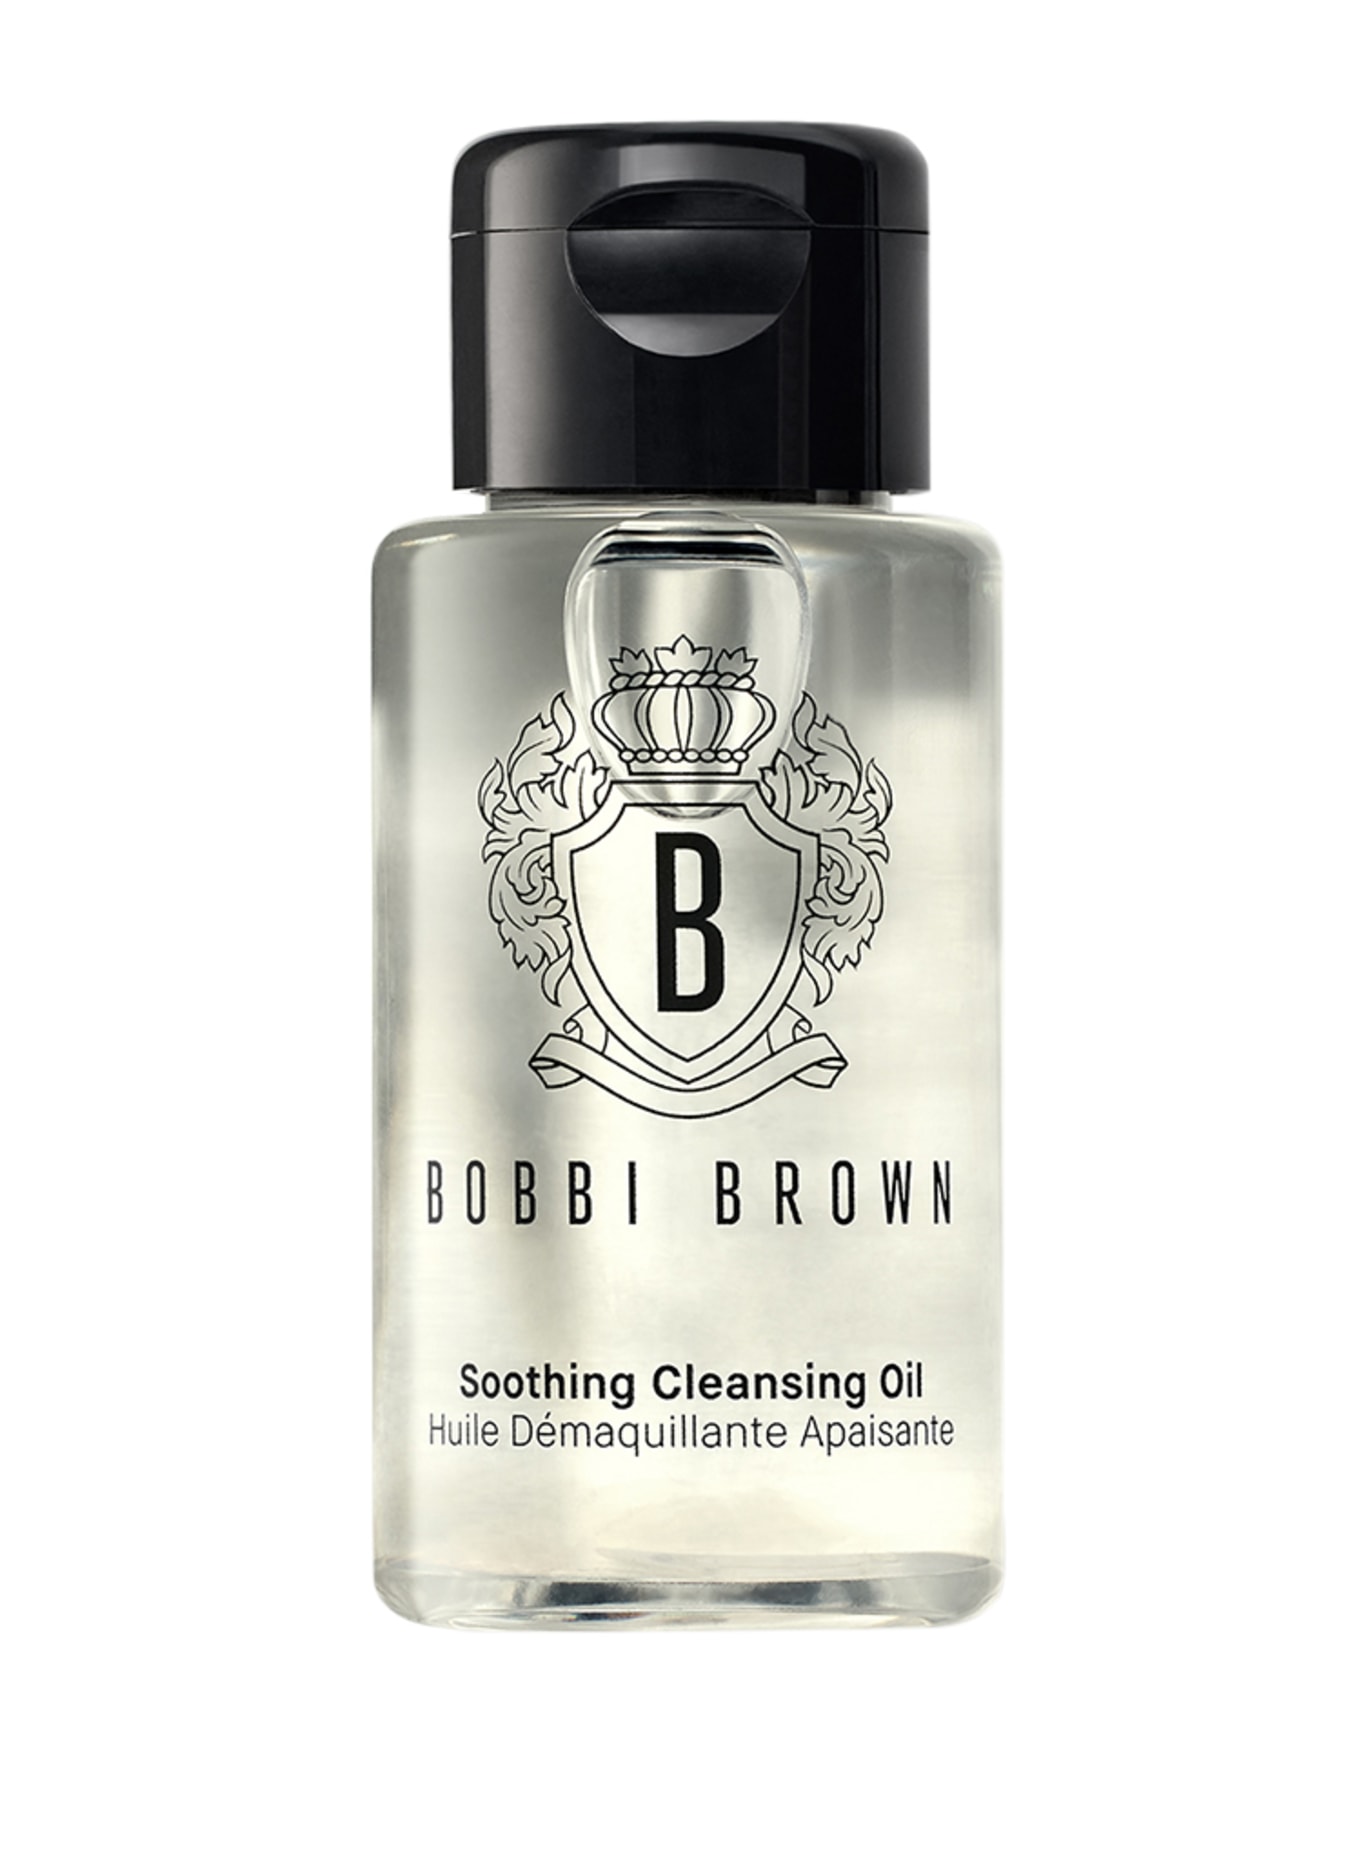 BOBBI BROWN SOOTHING CLEANSING OIL (Obrázek 1)